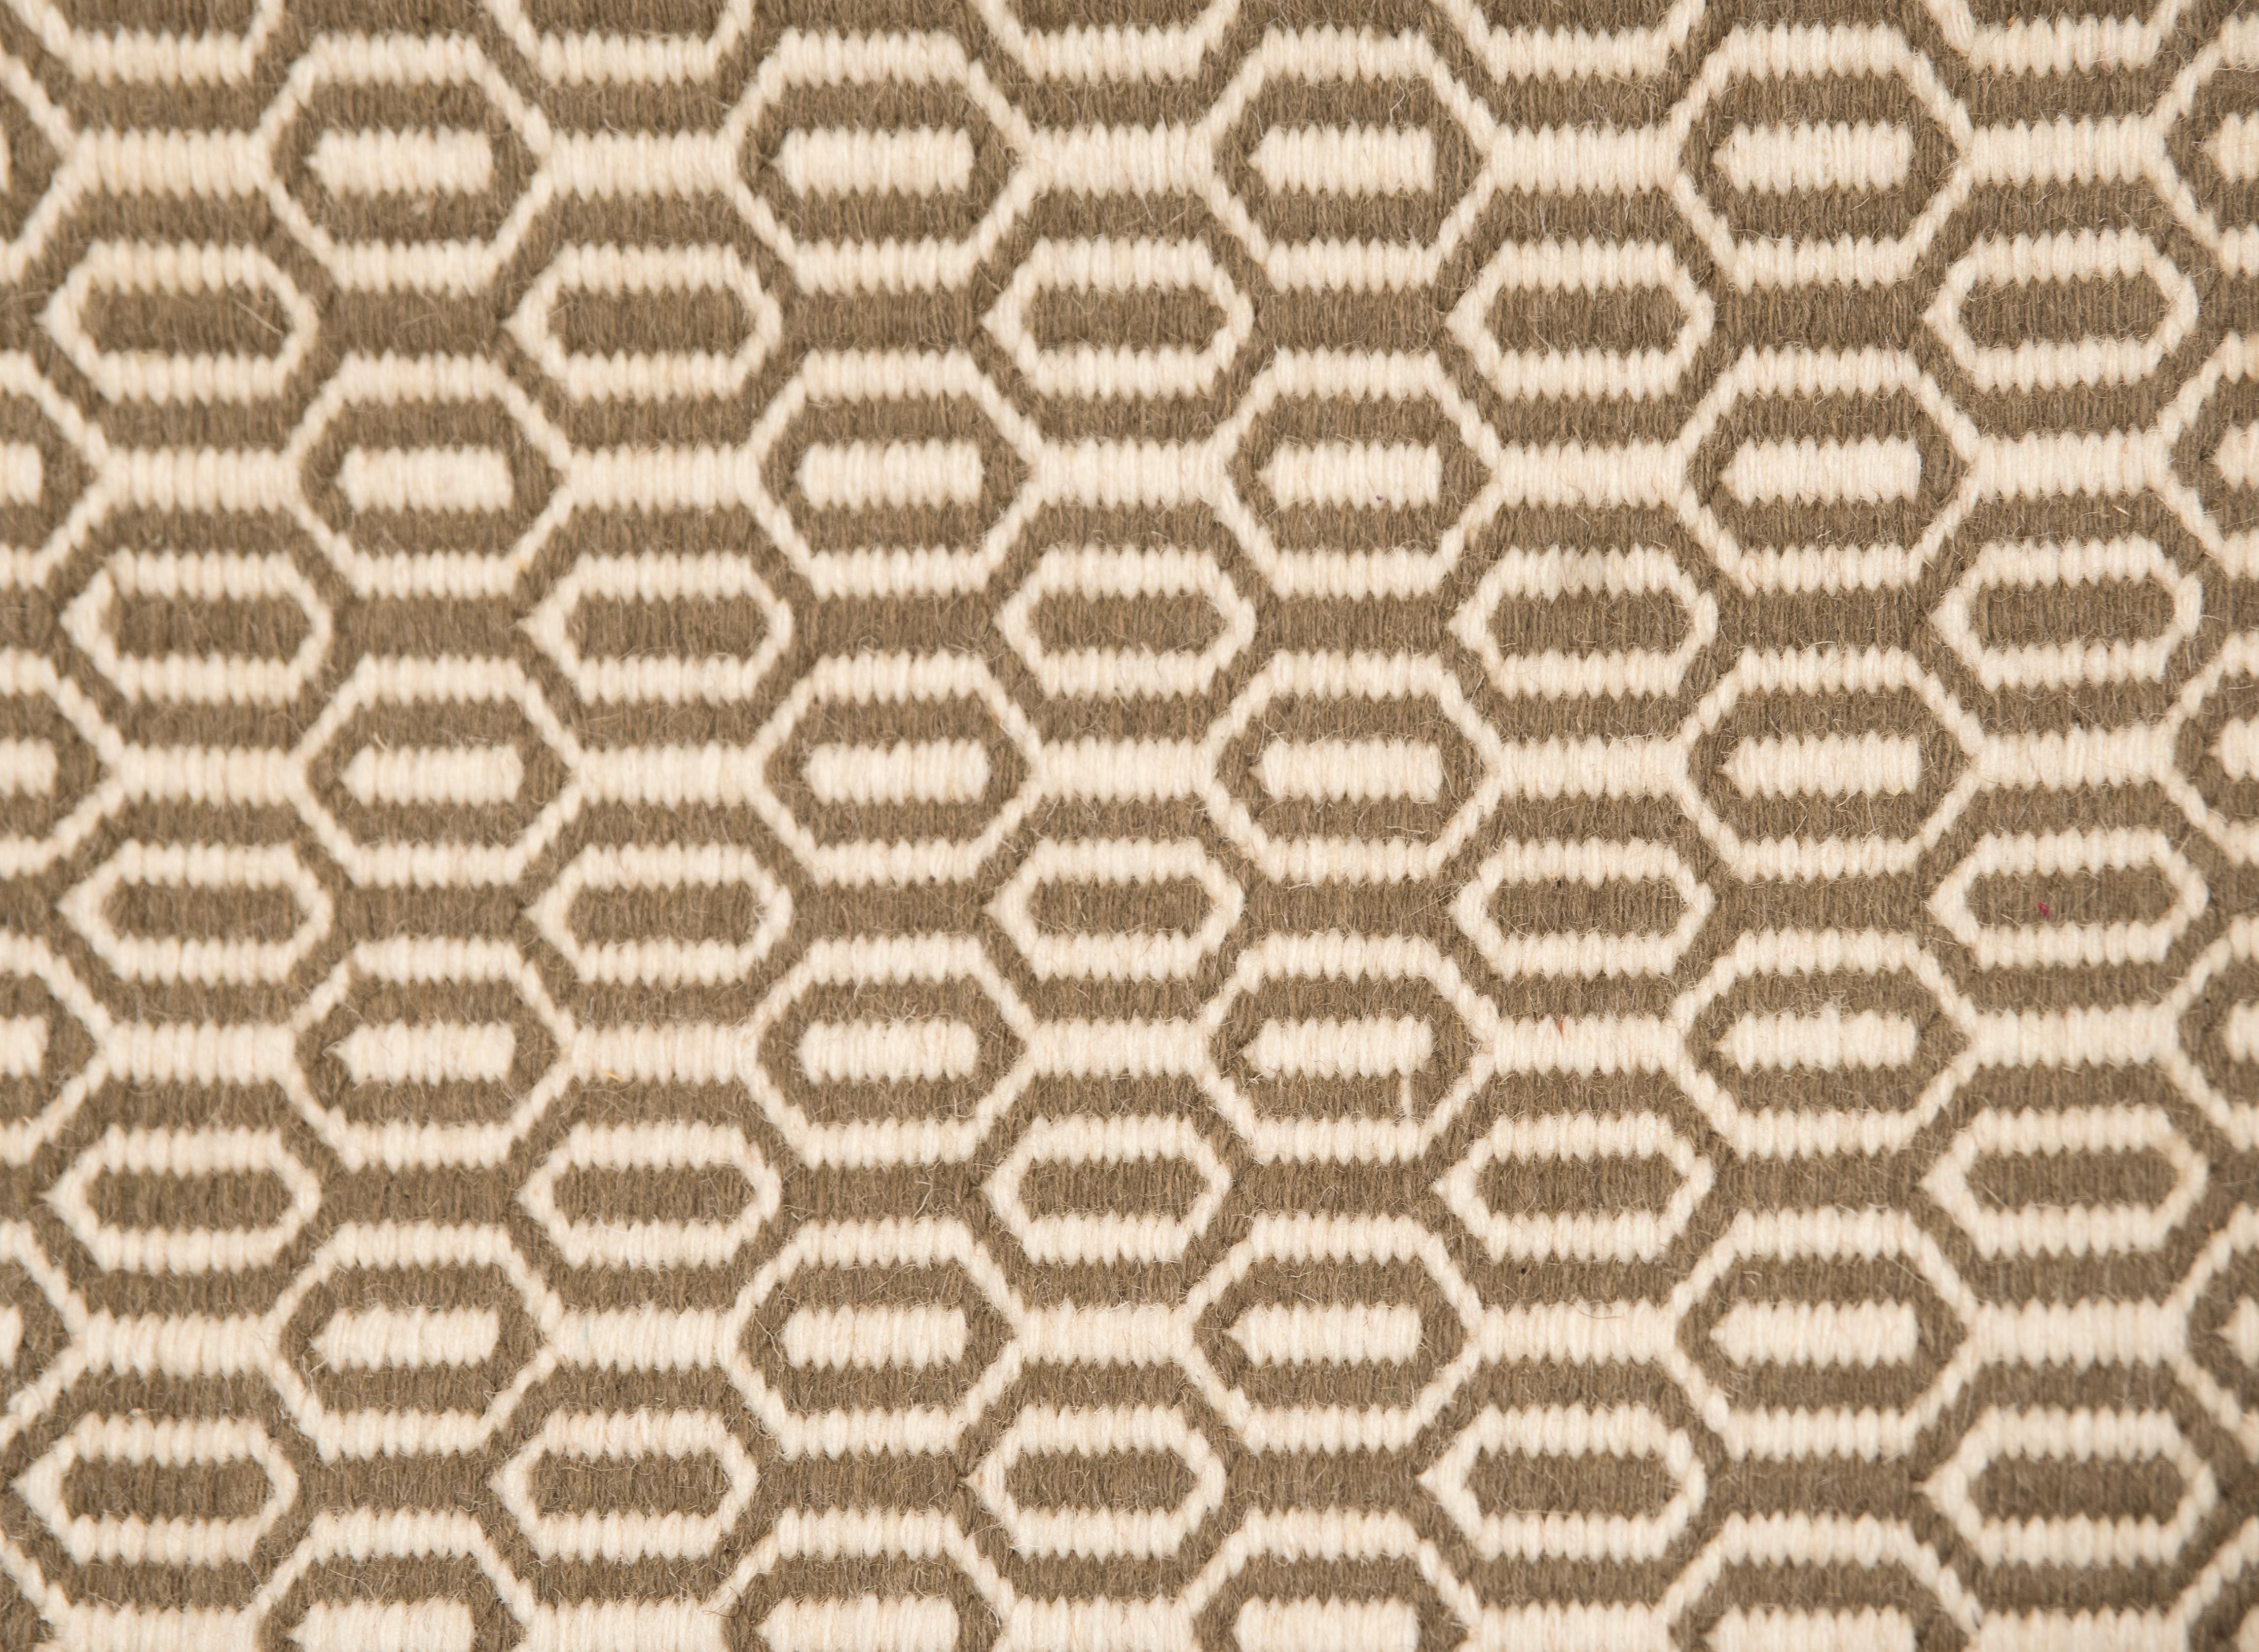 Ce tapis Paddle Dhurrie a été tissé à la main de manière éthique dans les fils de laine les plus fins par des artisans du nord de l'Inde, en utilisant une technique de tissage traditionnelle qui définit le design.
Chaque tapis est tissé à la main